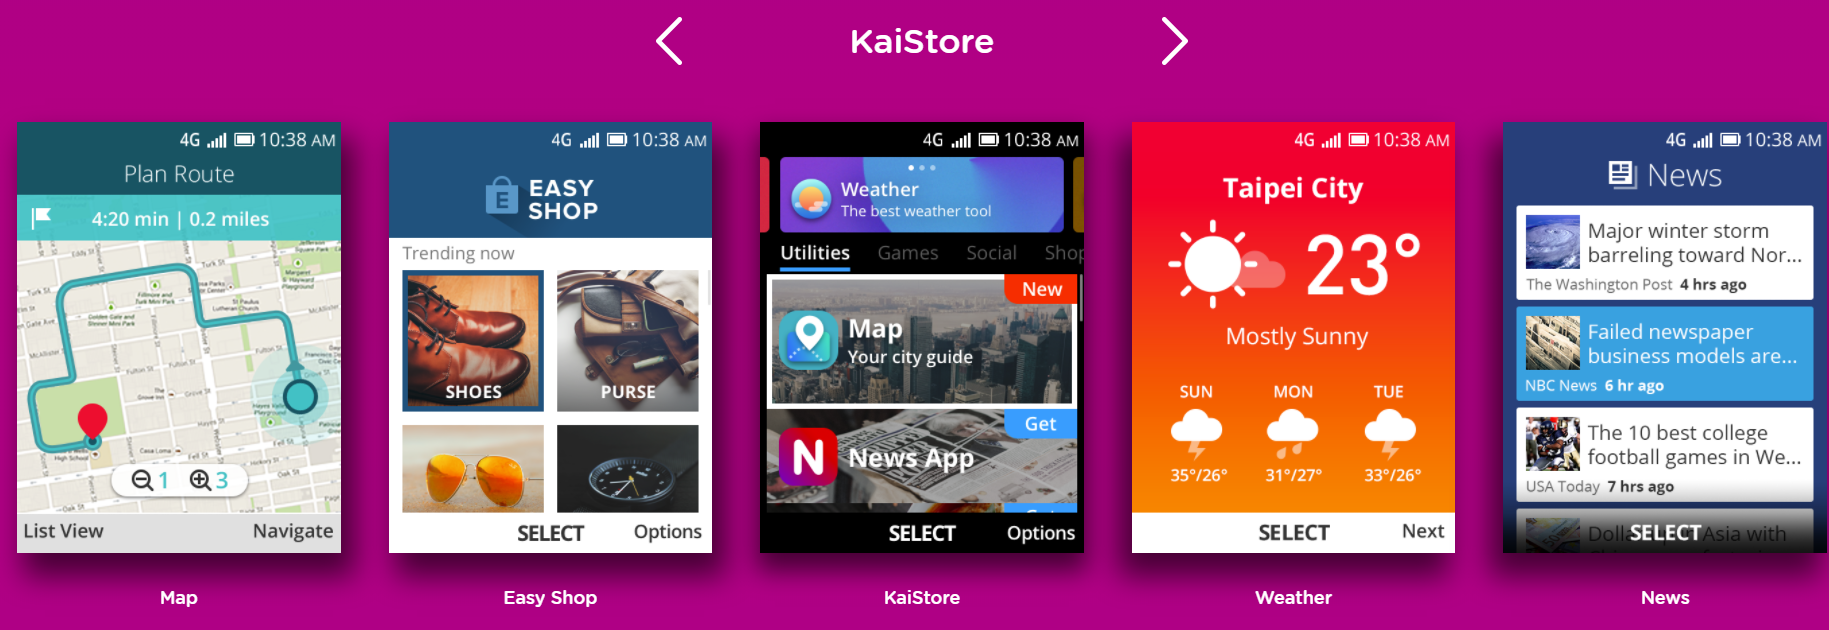 成功逆袭,KaiOS 超越 iOS 成为印度第二大移动